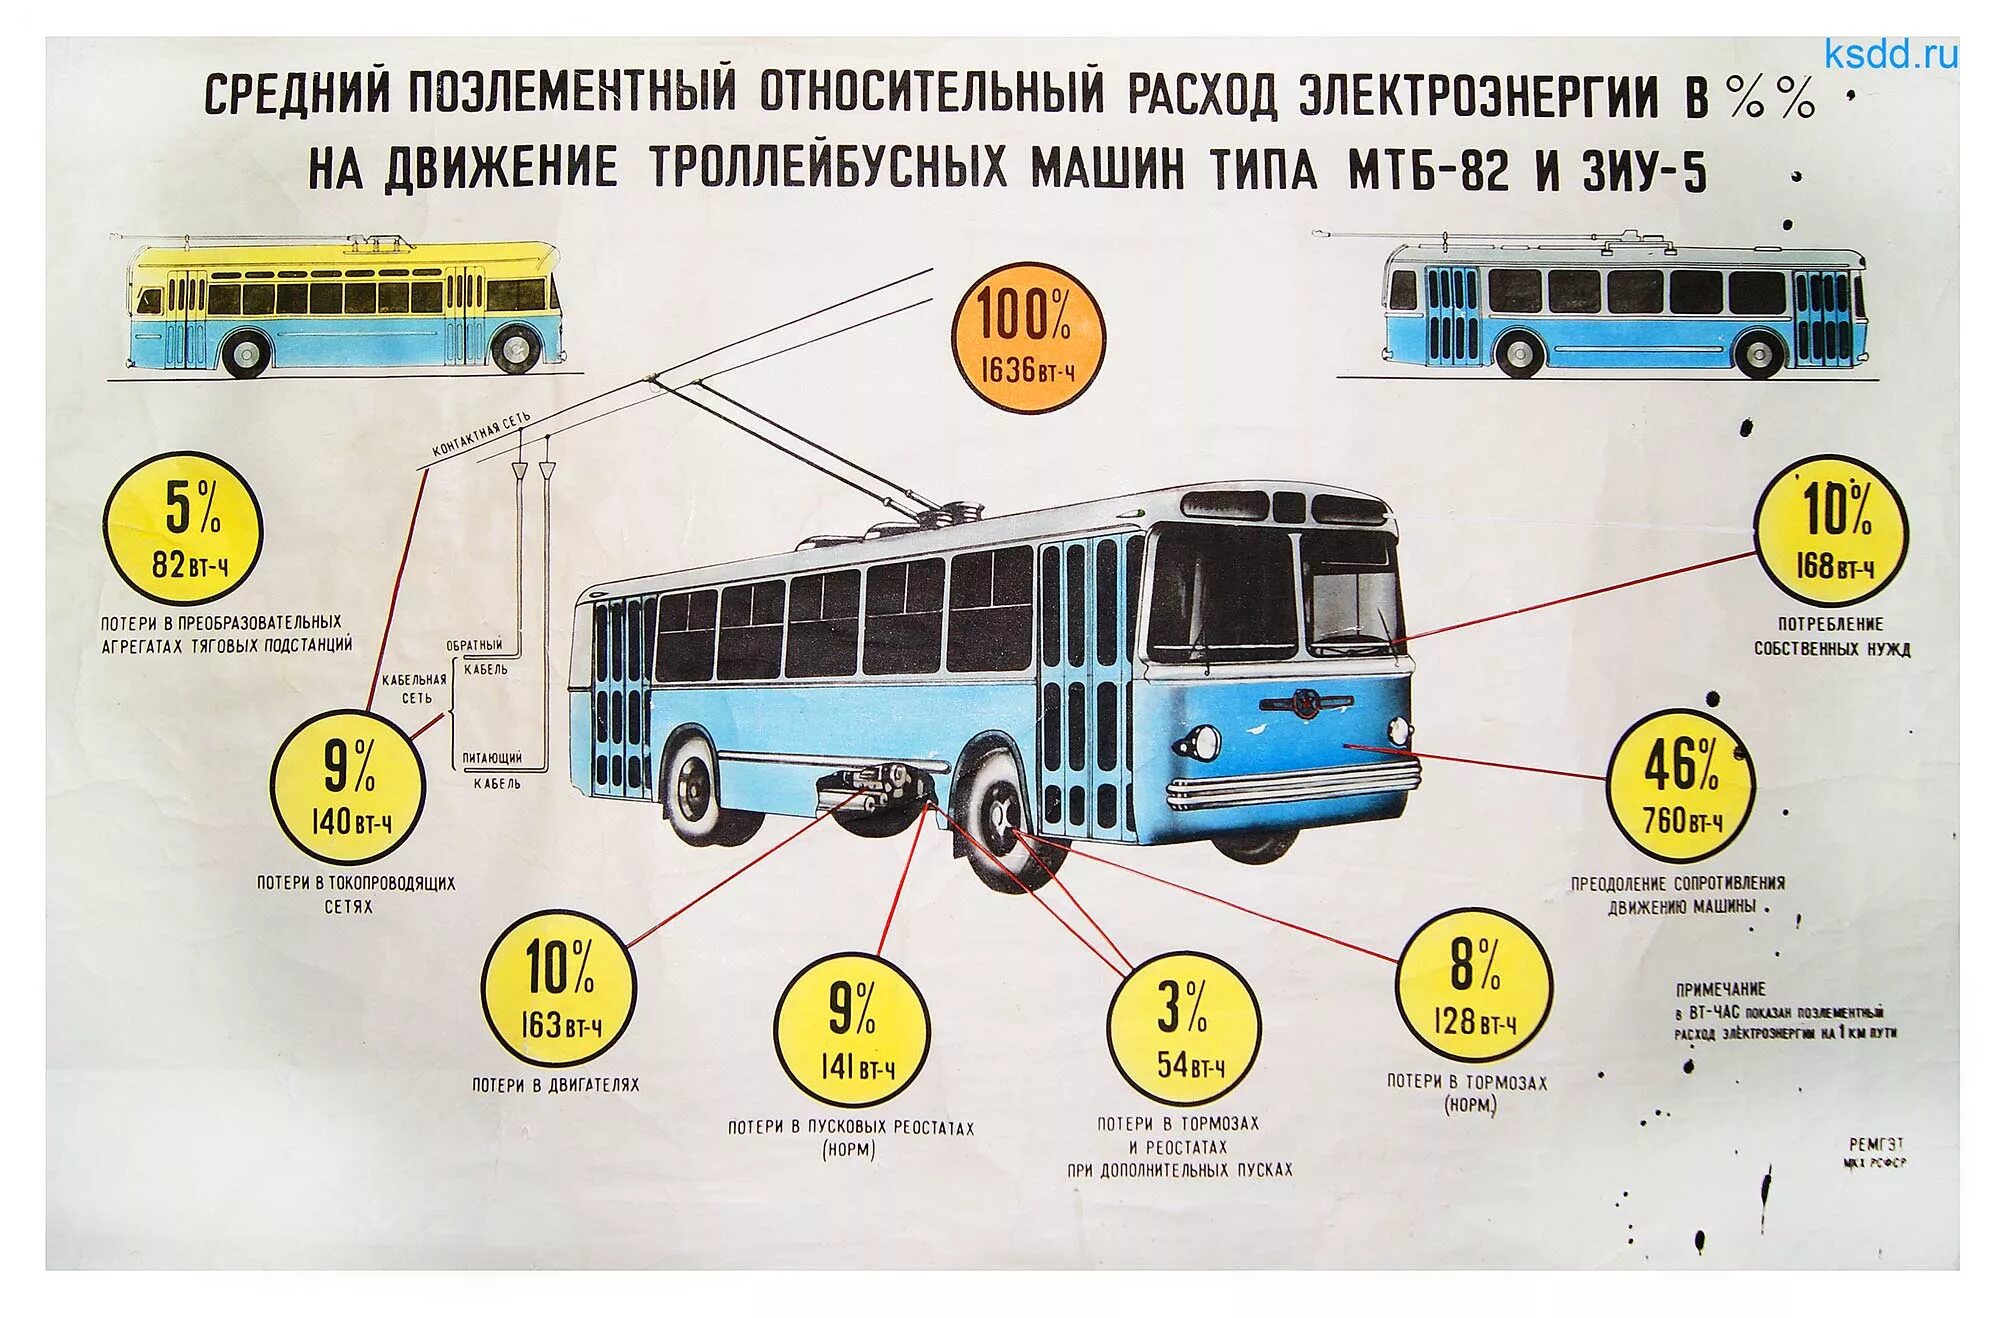 Троллейбус характеристики. Троллейбус МТБ-82 чертеж. Конструкция троллейбуса. Основные части троллейбуса. Строение троллейбуса.